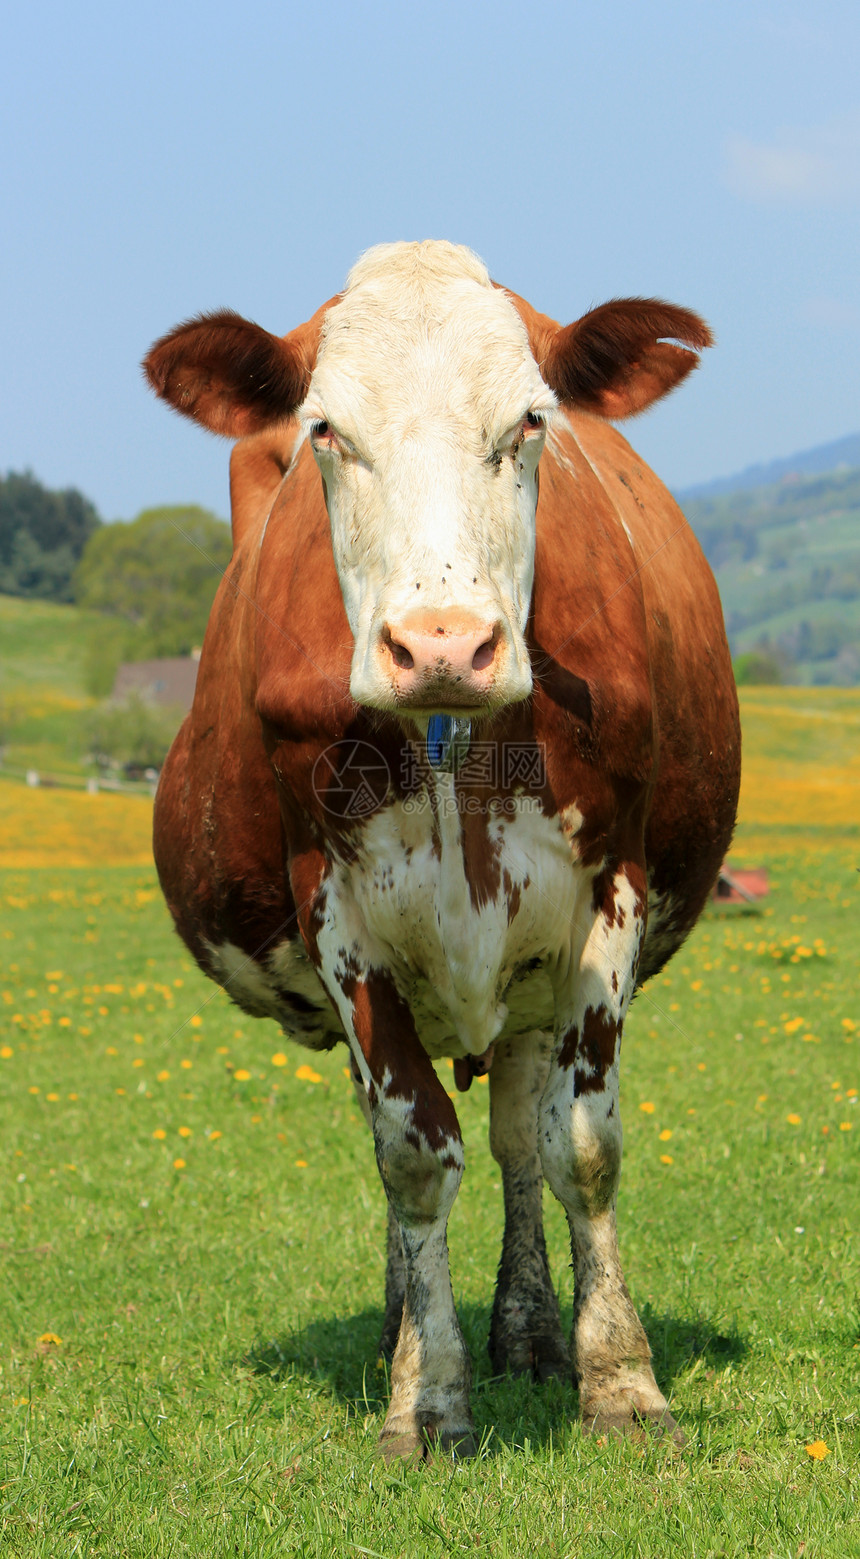 牛的肖像耳朵棕色绿色白色鼻子尾巴山脉头发眼睛乳房图片